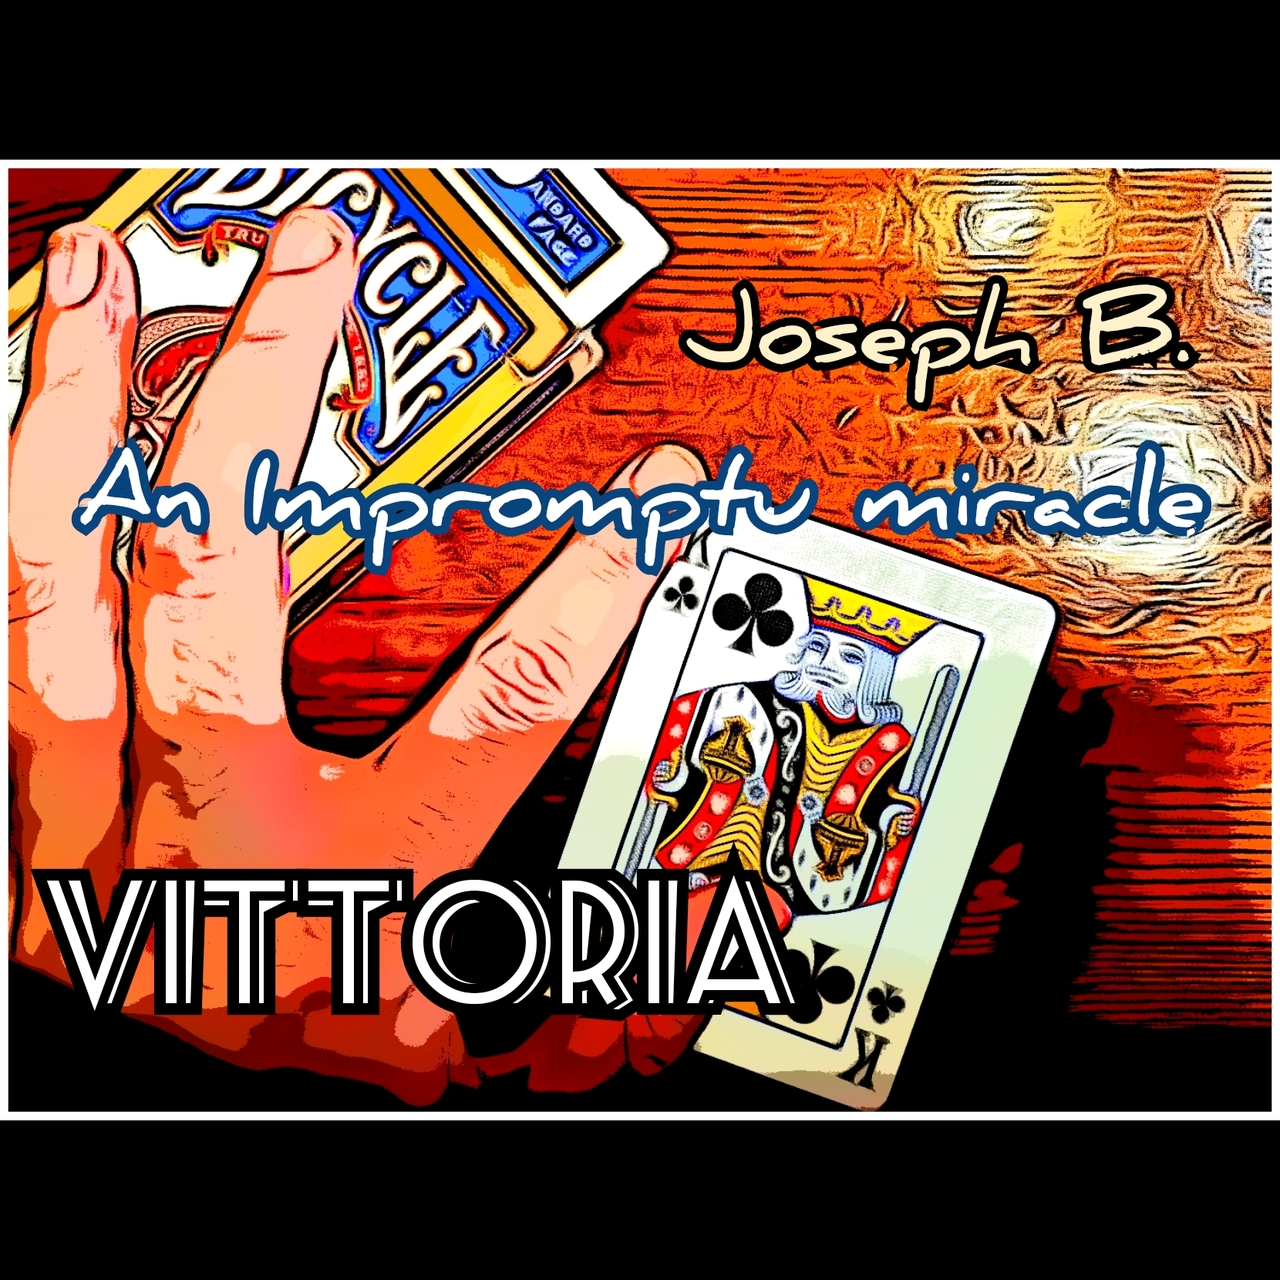 Vittoria by Joseph B. (MP4 Videos Download)